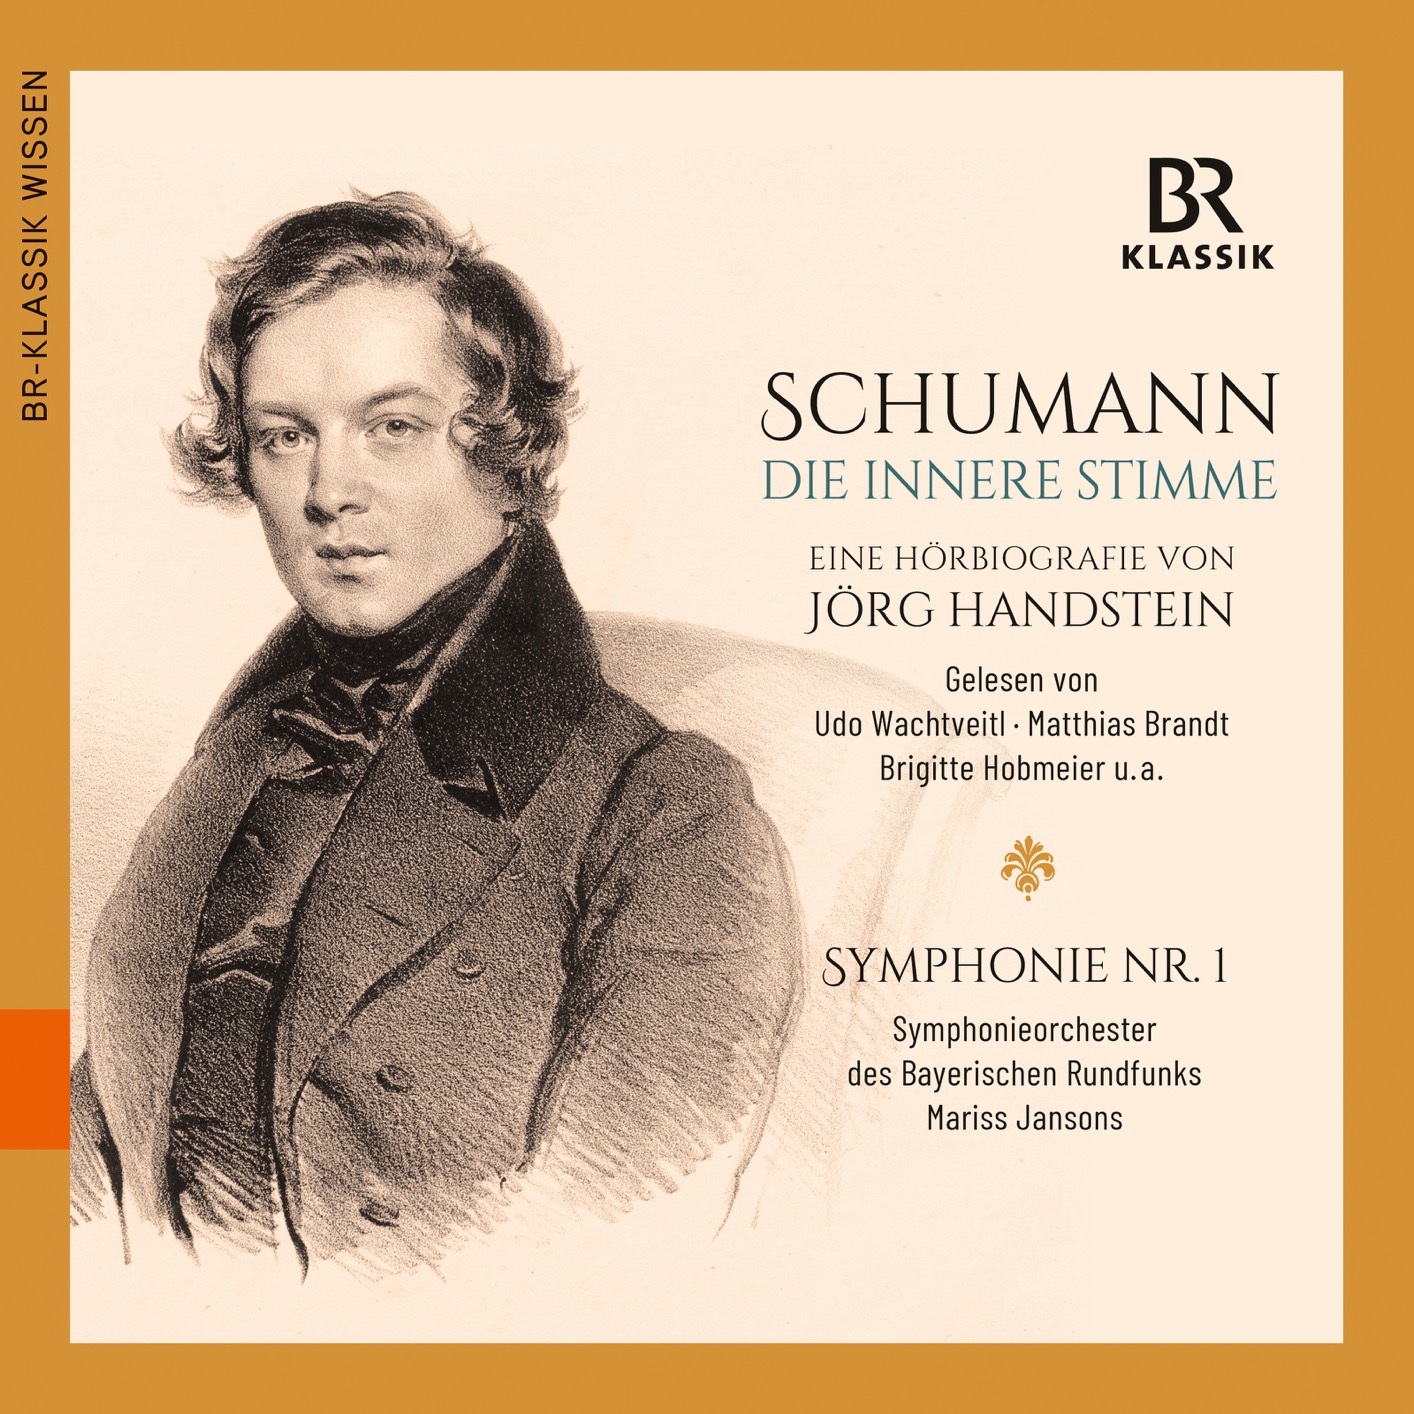 Udo Wachtveitl, Mariss Jansons - R. Schumann: Die innere Stimme (2019) [FLAC 24bit/48kHz]